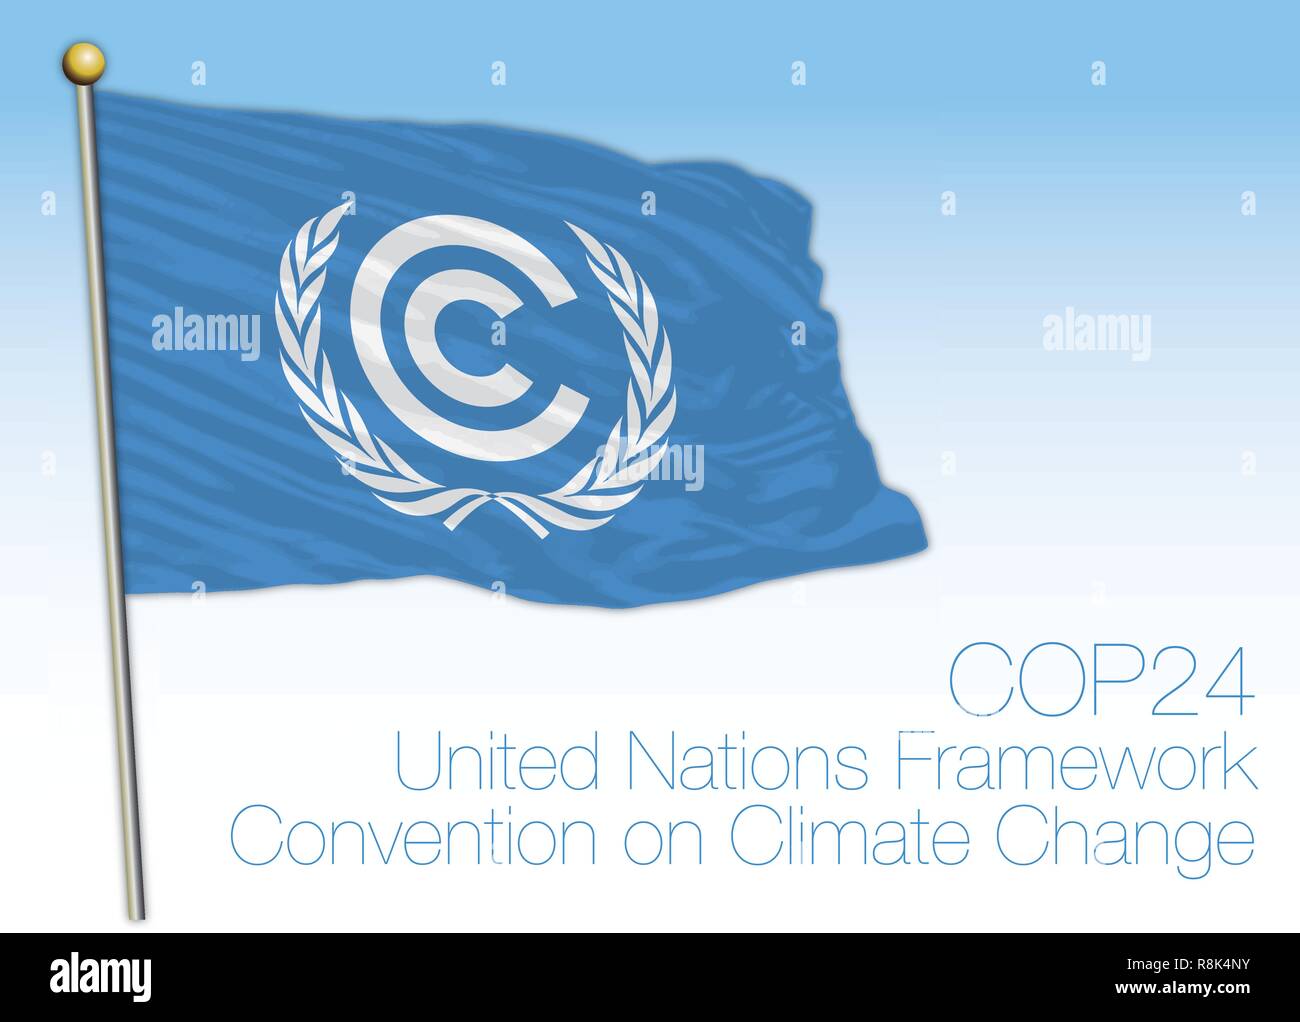 Conferenza delle Nazioni Unite sul cambiamento climatico e l'organizzazione bandiera, illustrazione vettoriale Illustrazione Vettoriale